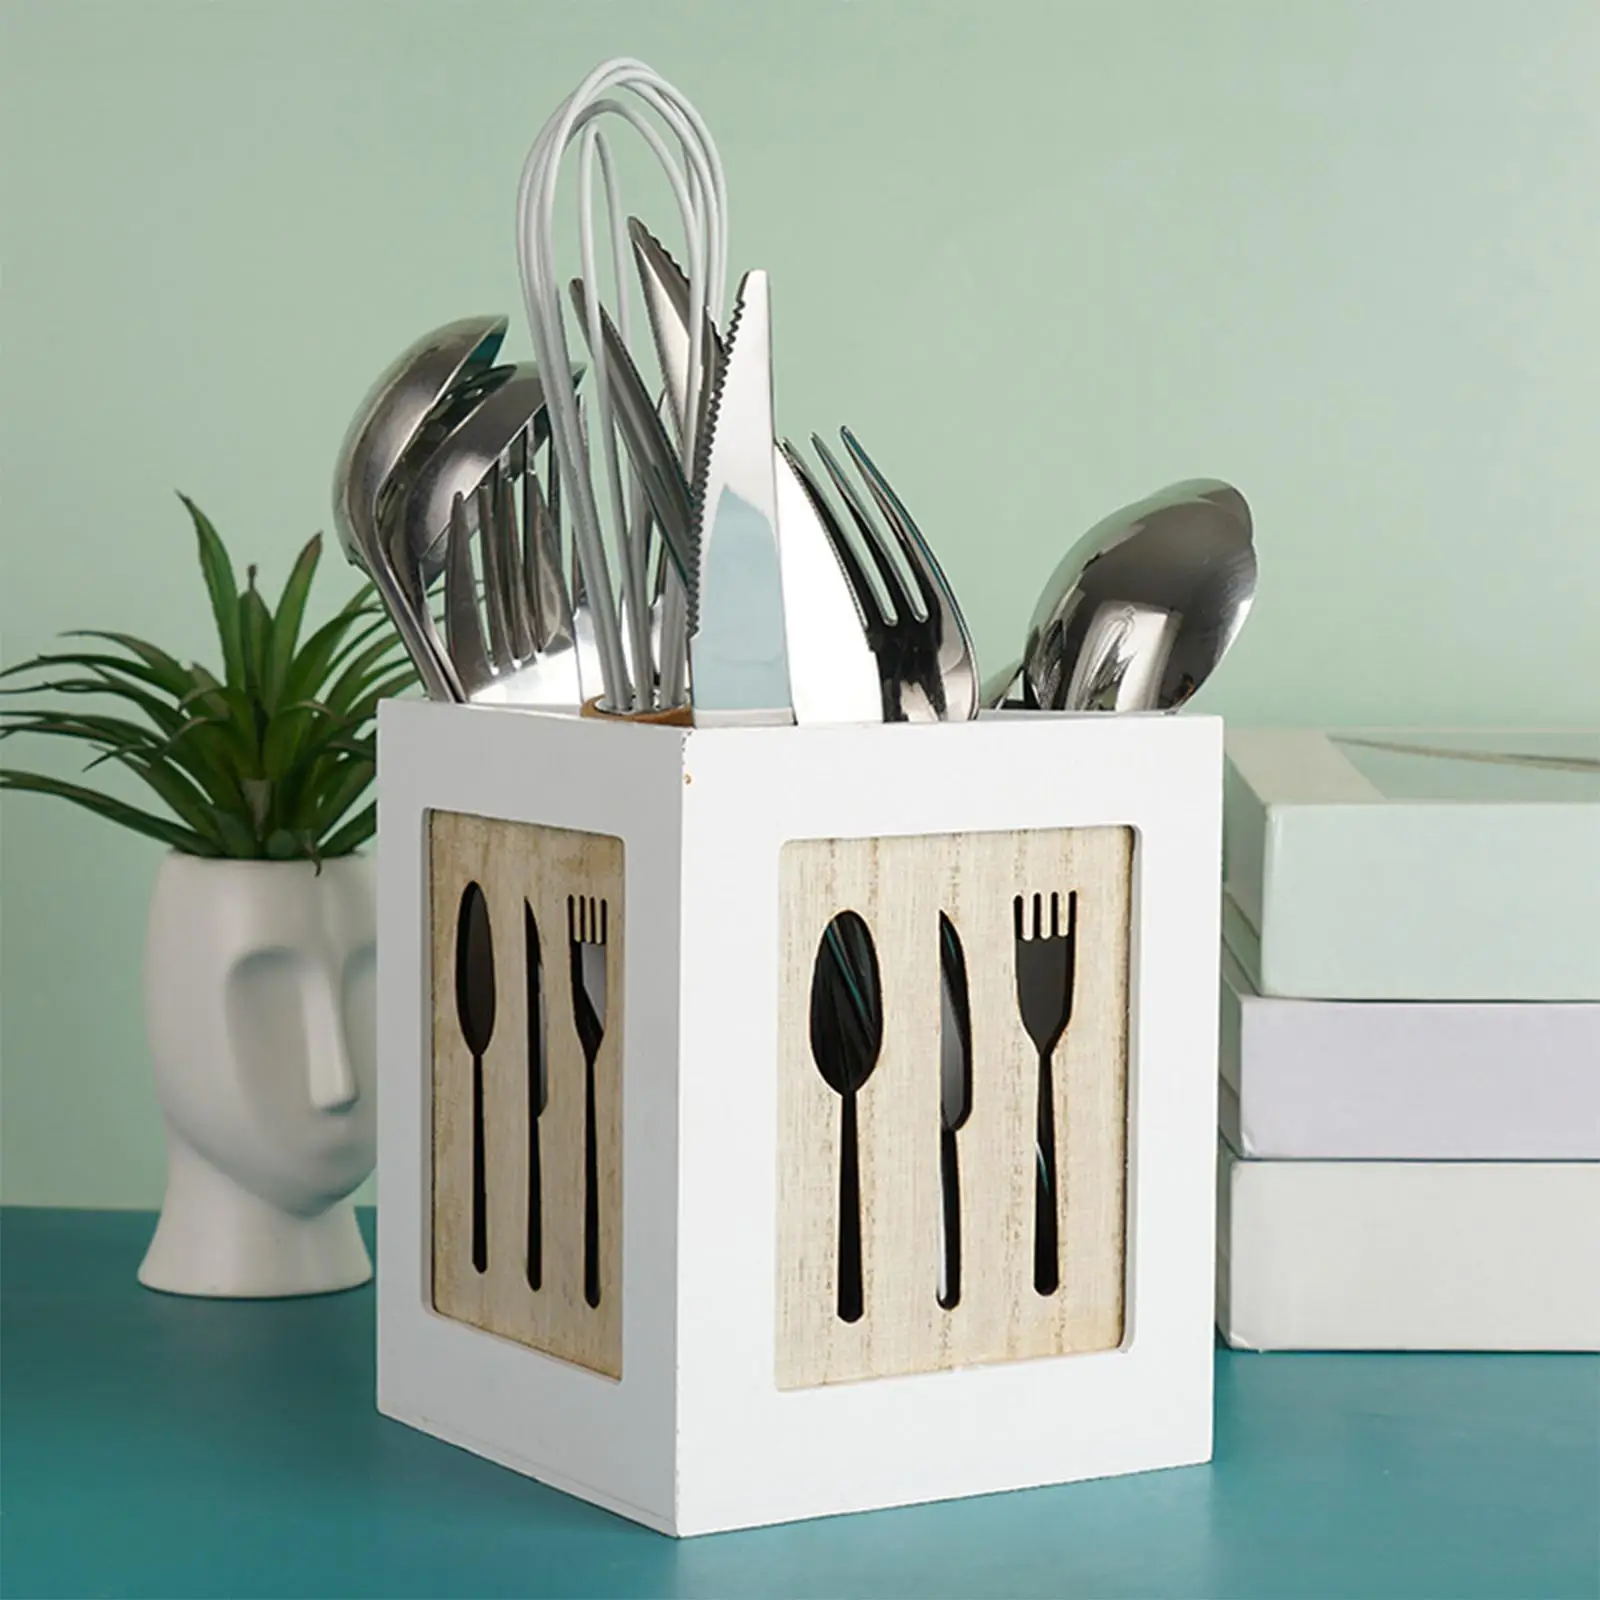 Wooden Kitchen Cutlery Holder Flatware Organizer Rack Shelf for Kitchen Table Chopstick Holds Fork Silverware Gadgets